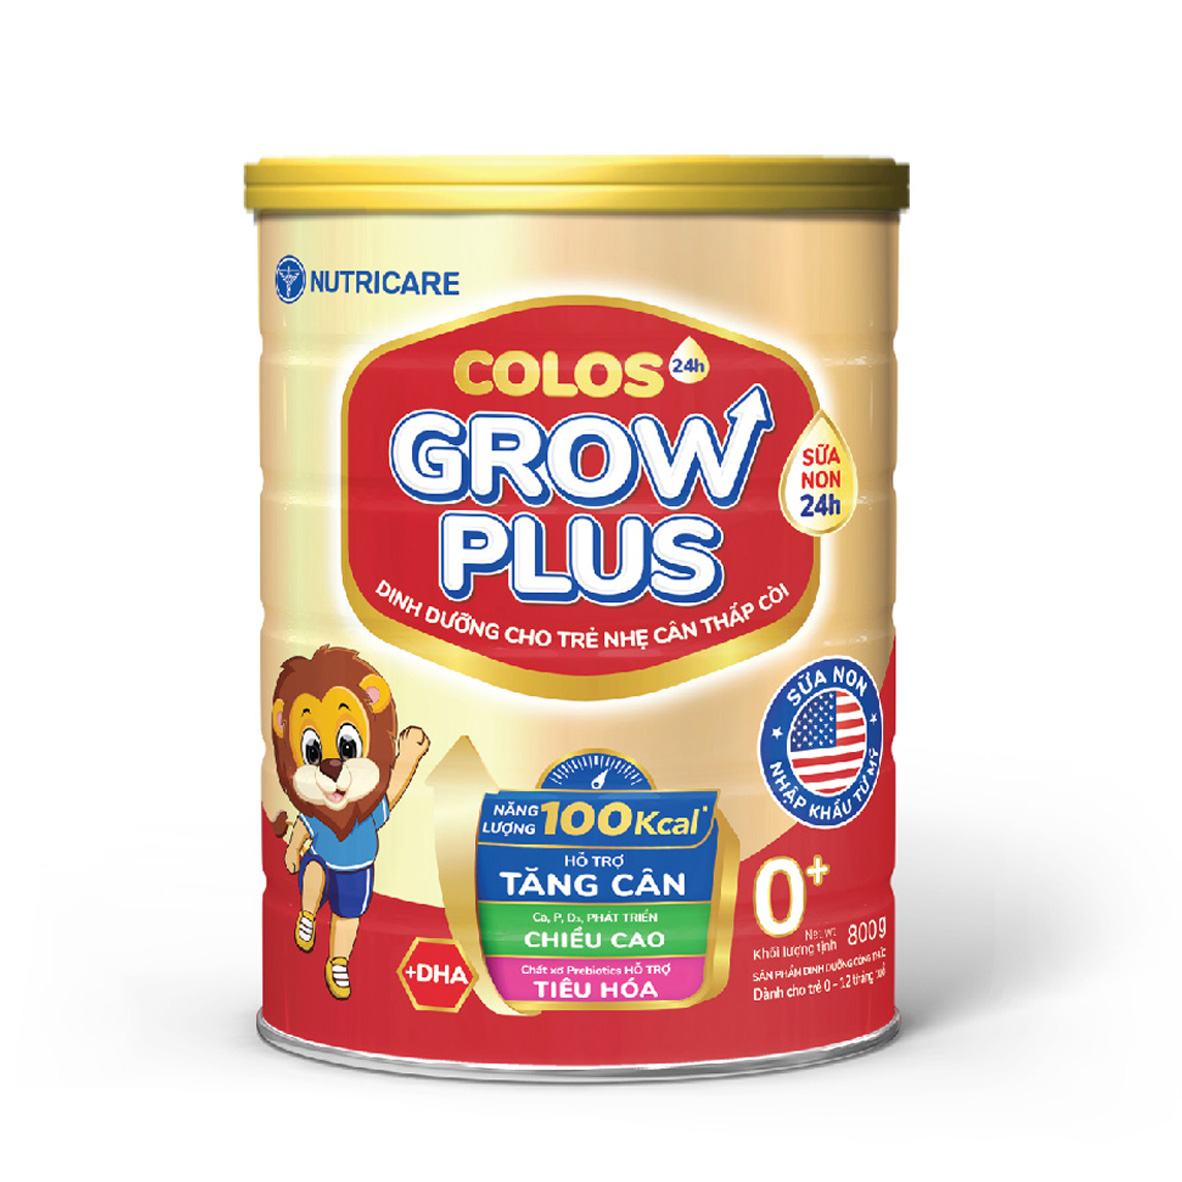 Sữa bột Nutricare Colos 24h Grow Plus 0+ giúp trẻ phát triển toàn diện (800g)